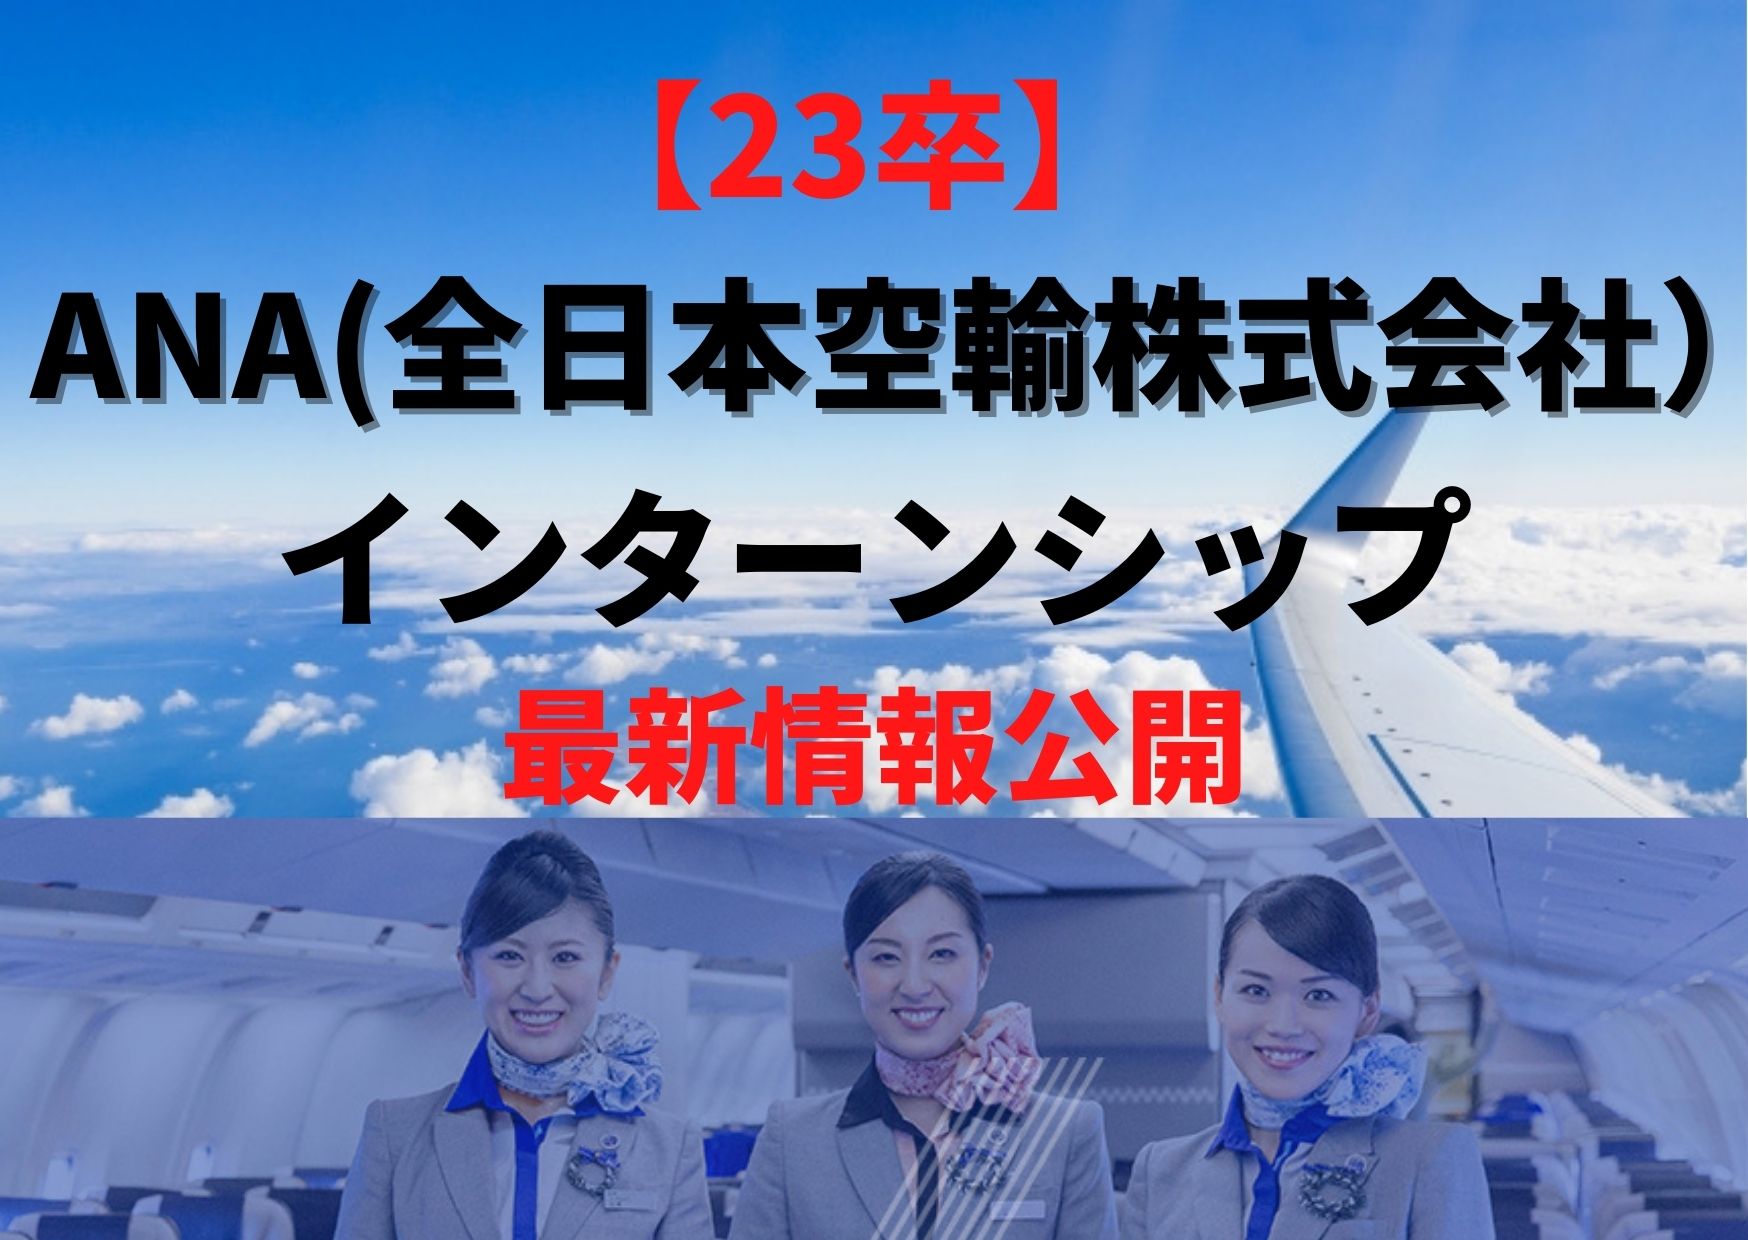 23卒 Ana 全日本空輸株式会社 インターンシップ最新情報公開 内容から選考対策 倍率